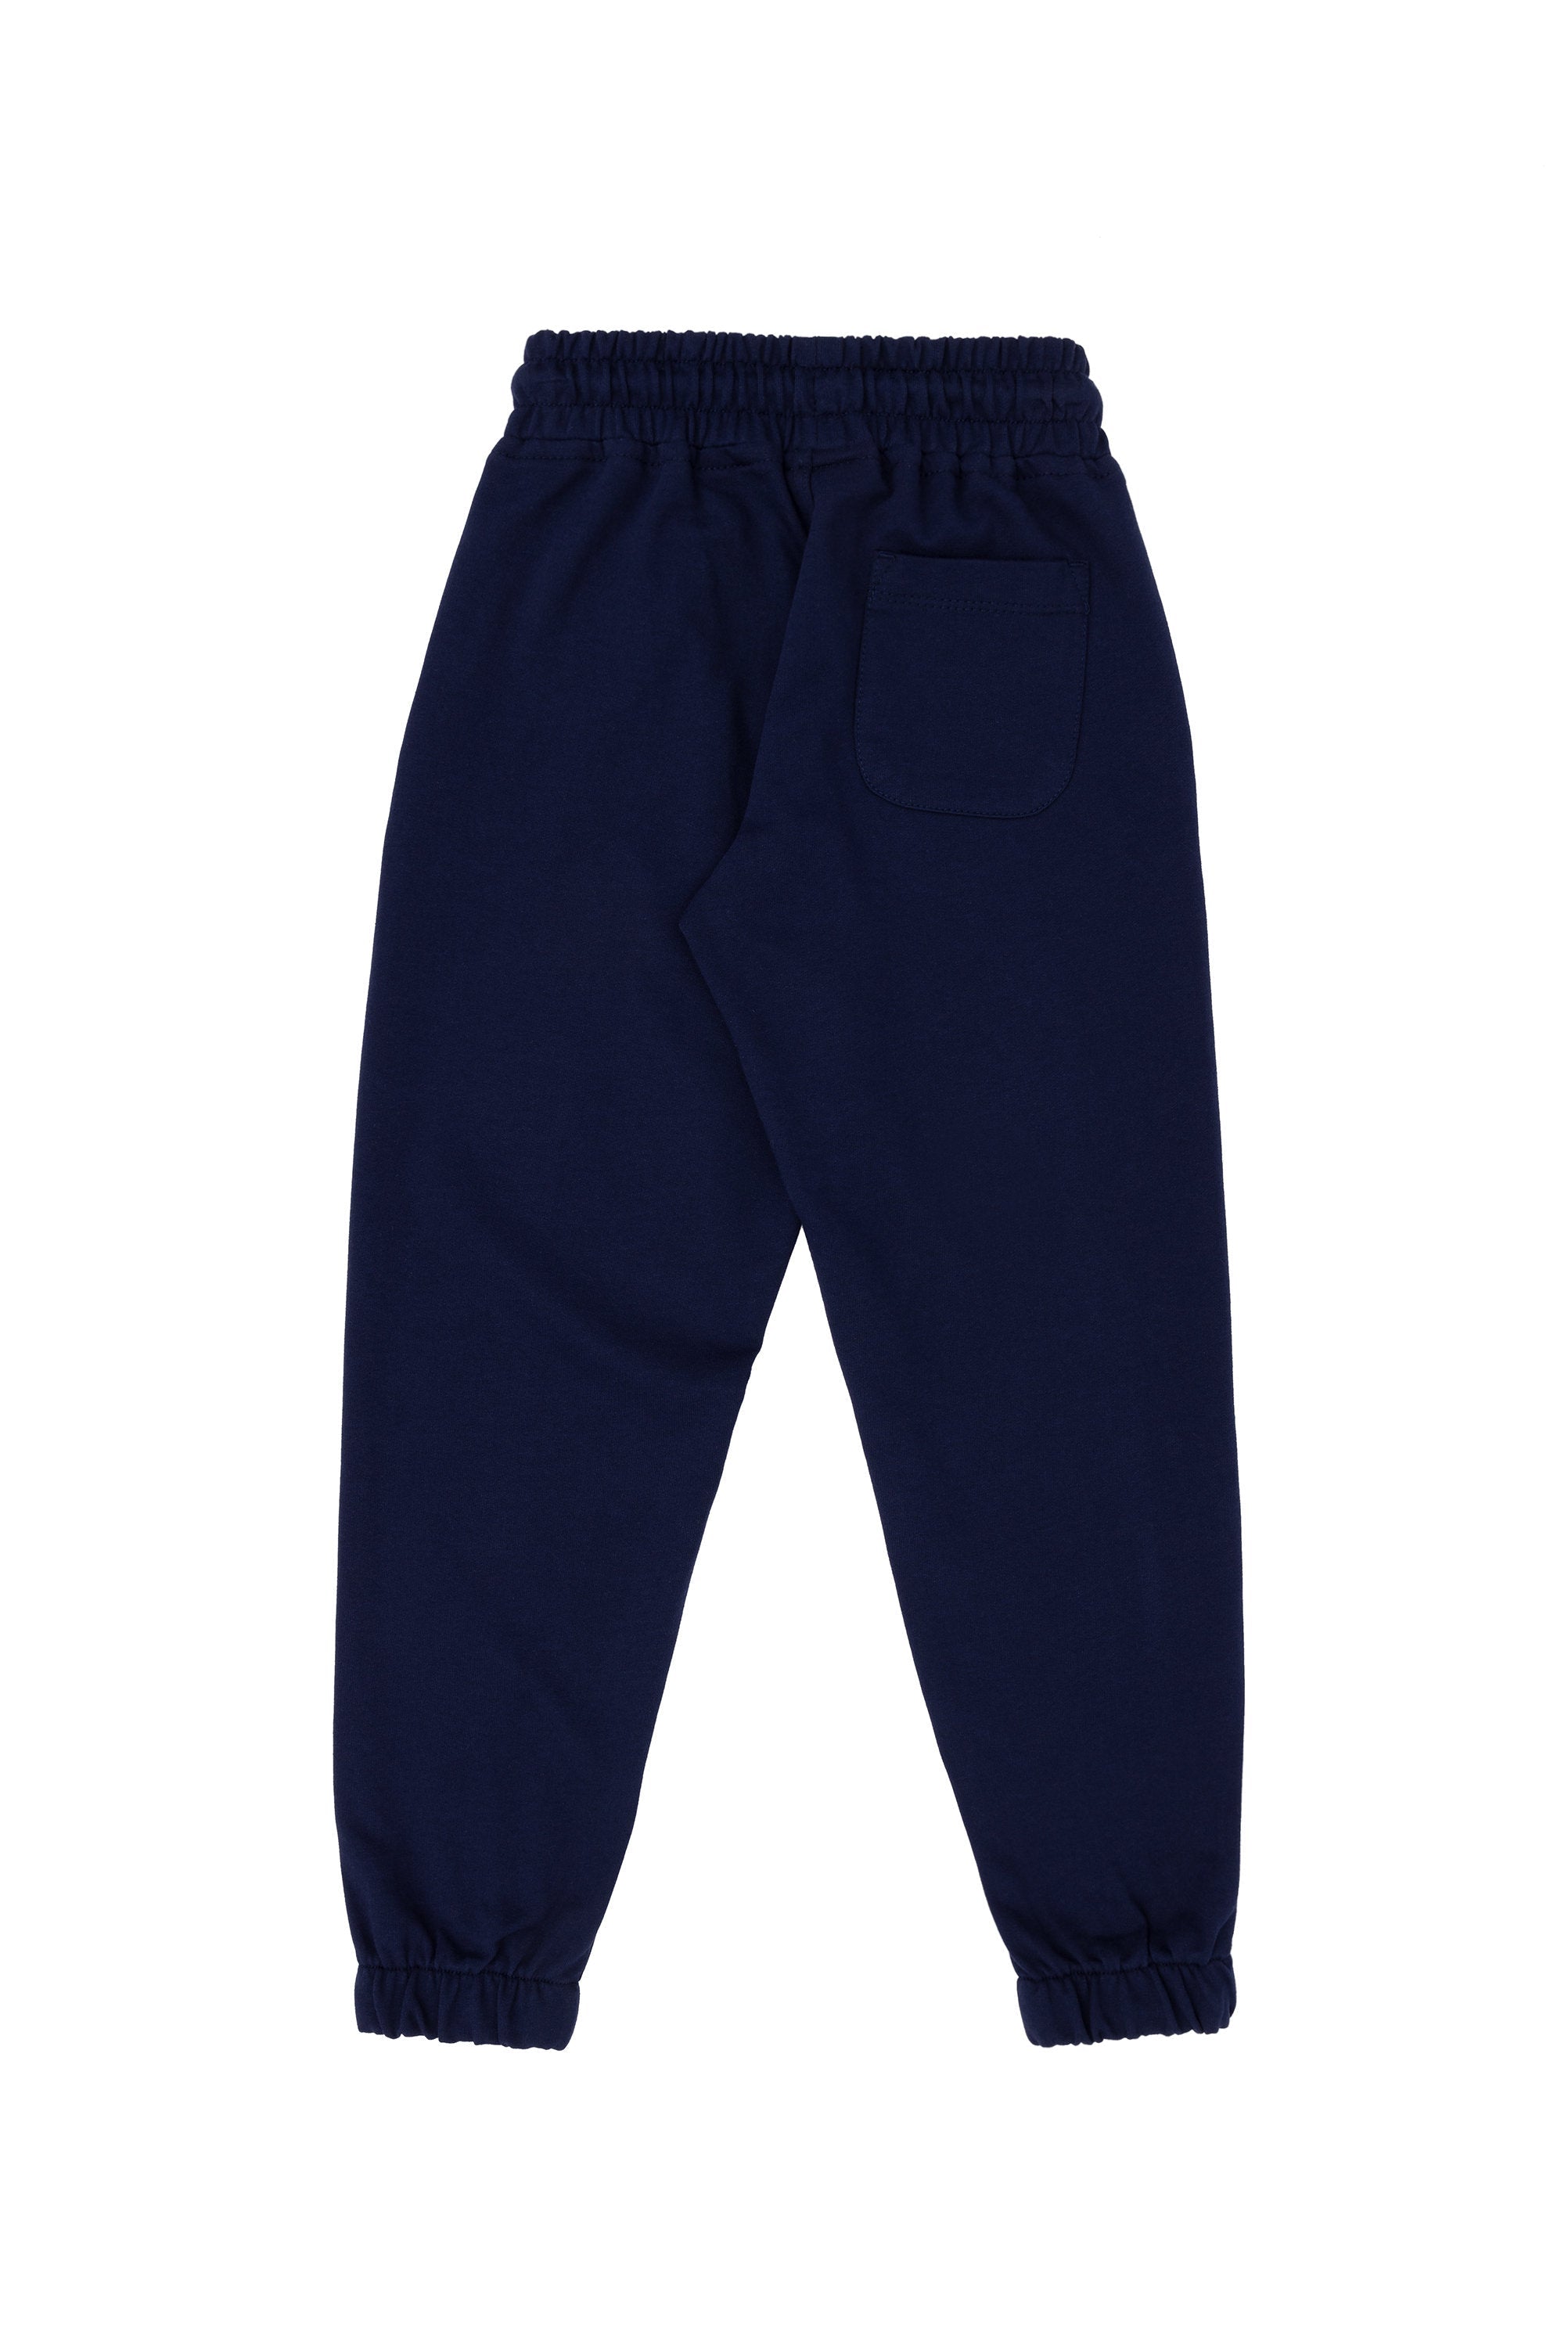 Boys Dark Blue Jersey Trousers_G083SZ0OP0 1795926_VR033_03